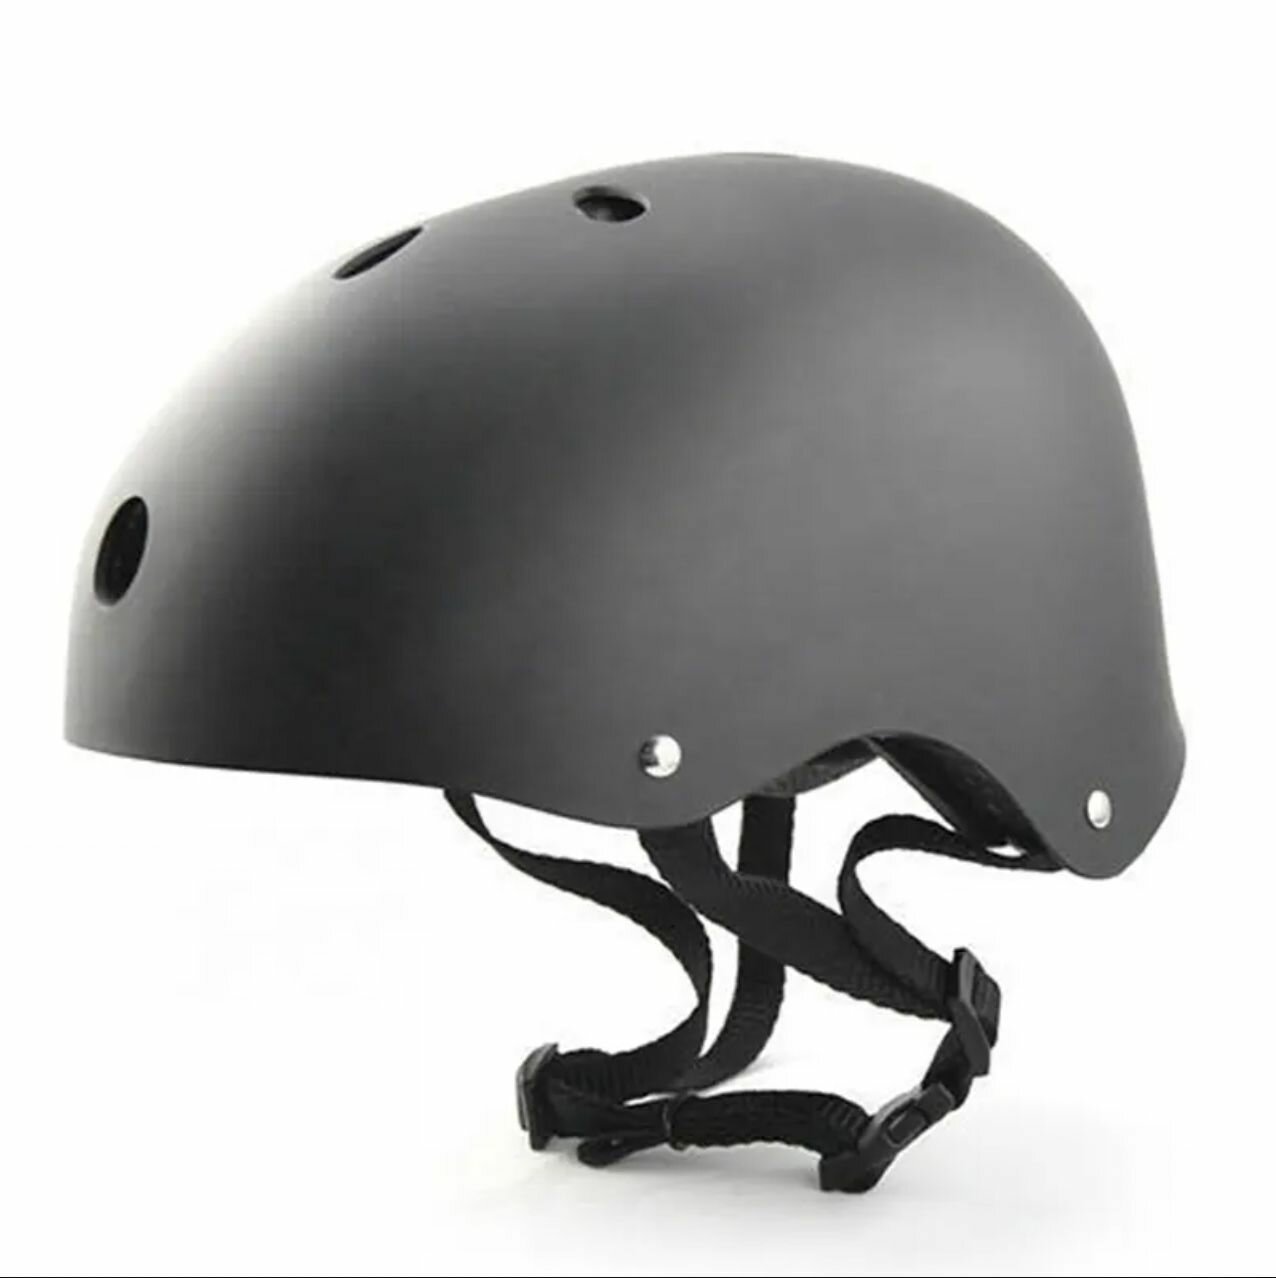 Шлем защитный детский для катания на скейтбординге, роликах, самокатах, велосипедах Vinch-388, черный L